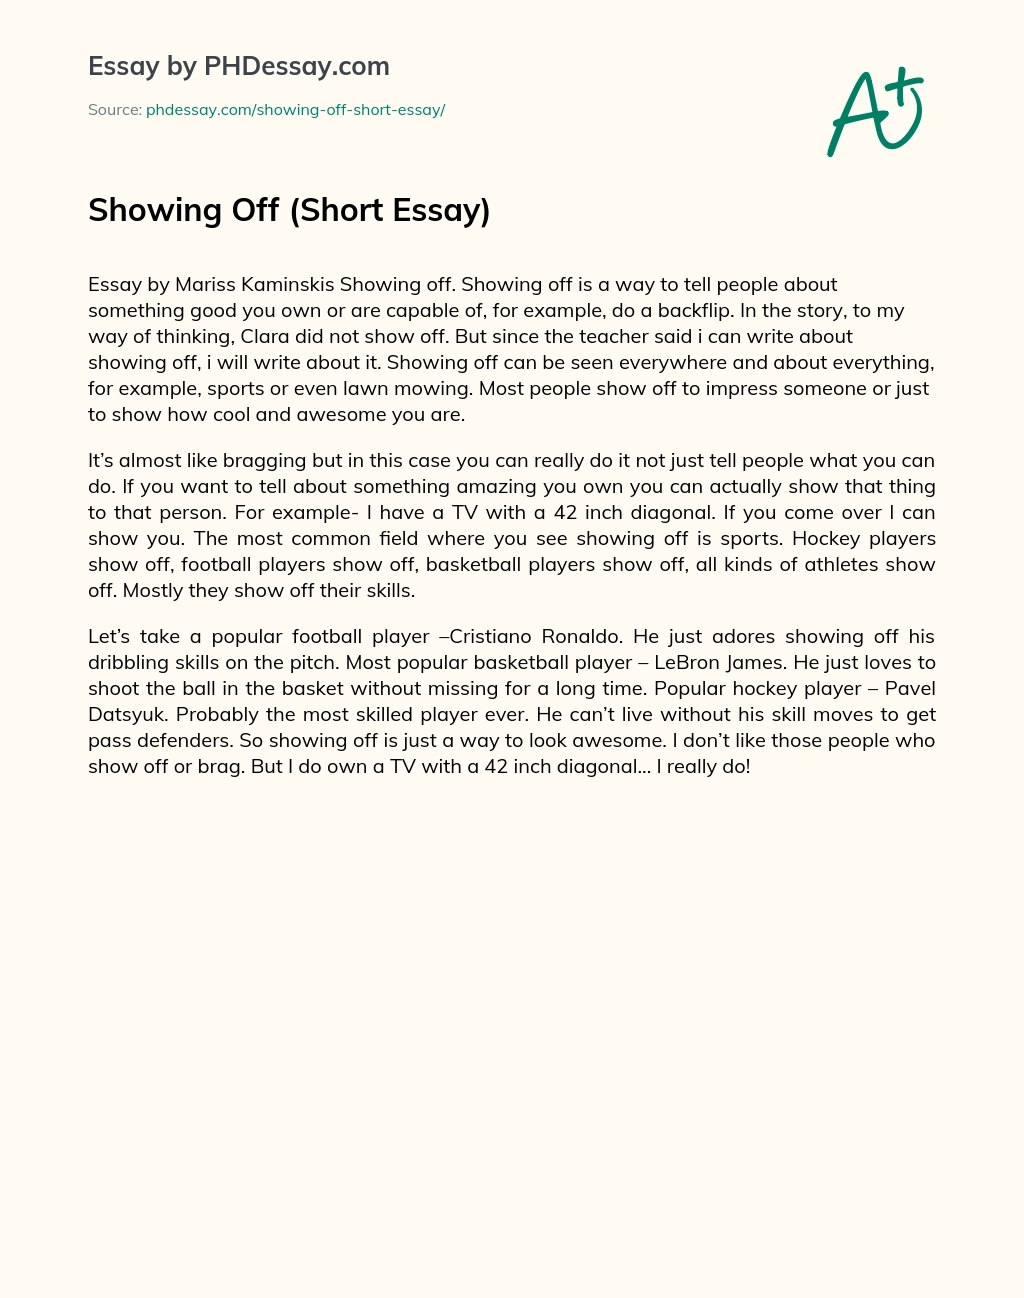 Showing Off (Short Essay) essay